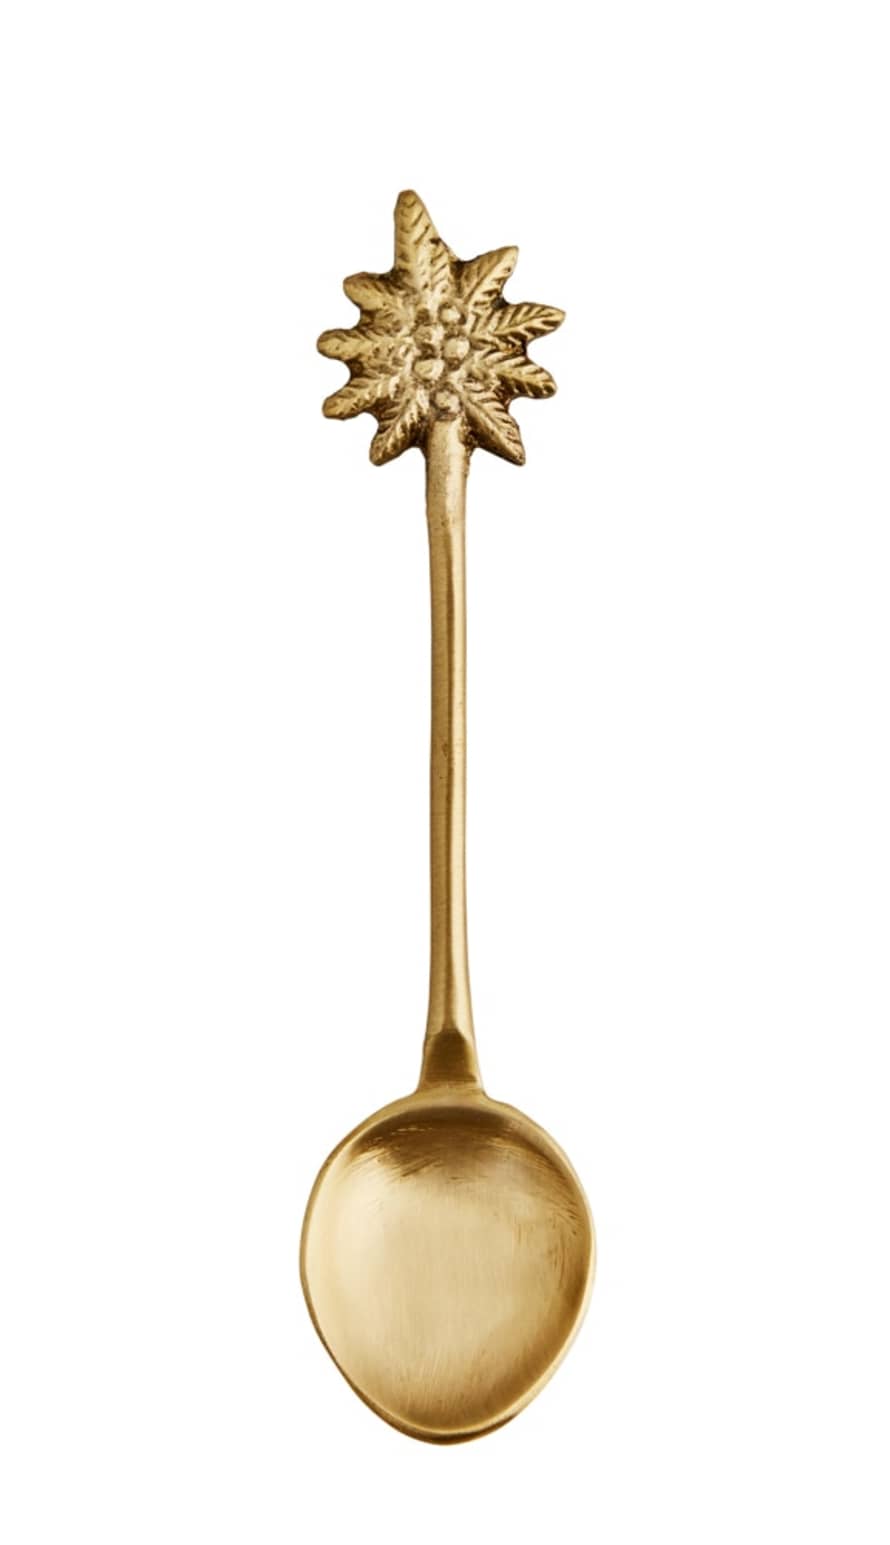 Madam Stoltz Small Brass Spoon with Palm